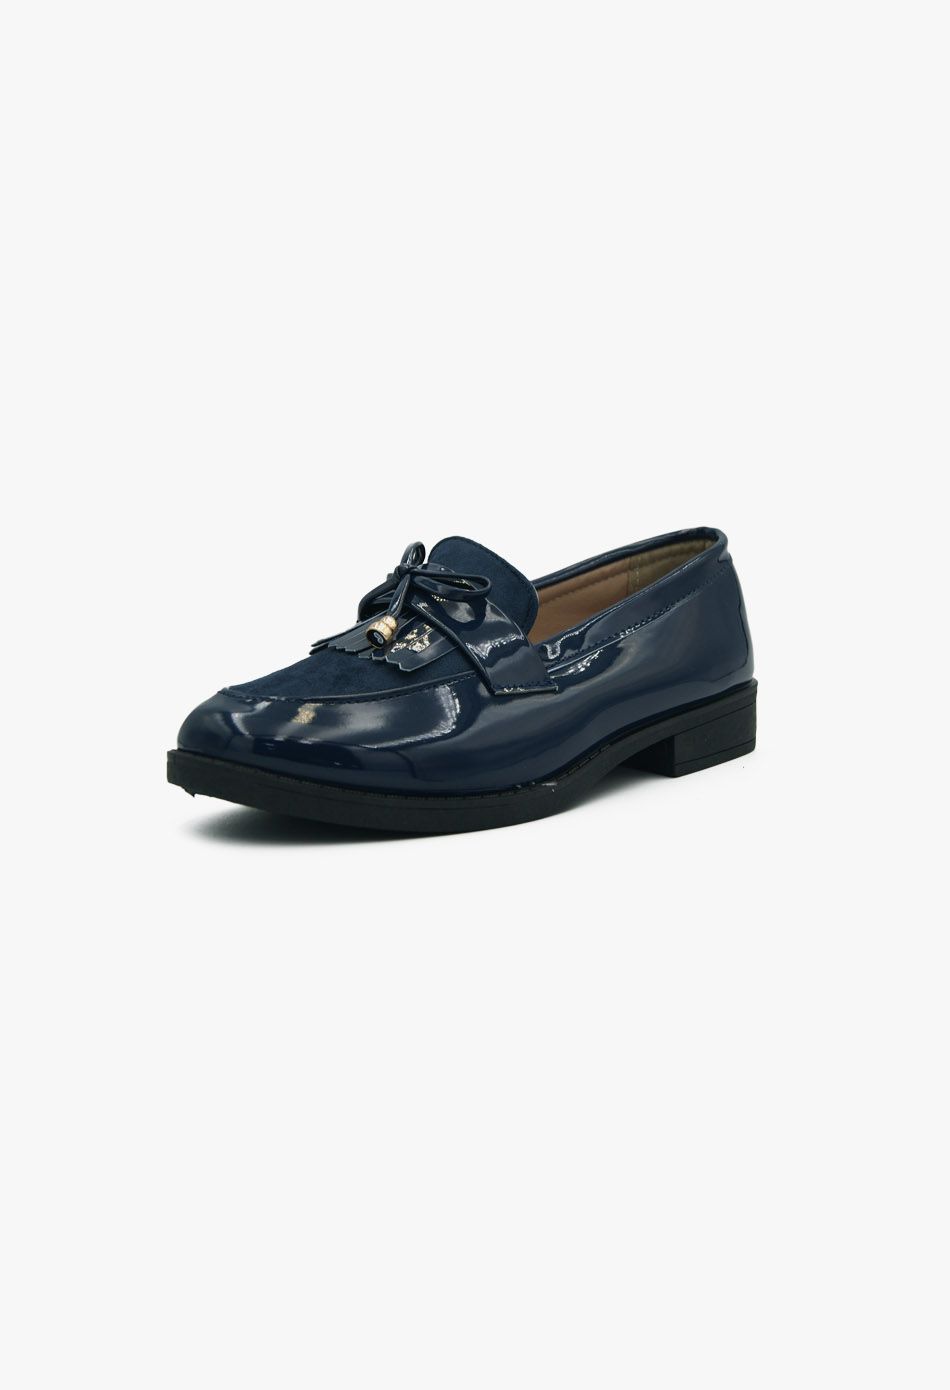 Γυναικεία Loafers σε Μπλε Χρώμα Λουστρίνι / XY-607-navy Χαμηλά Παπούτσια joya.gr